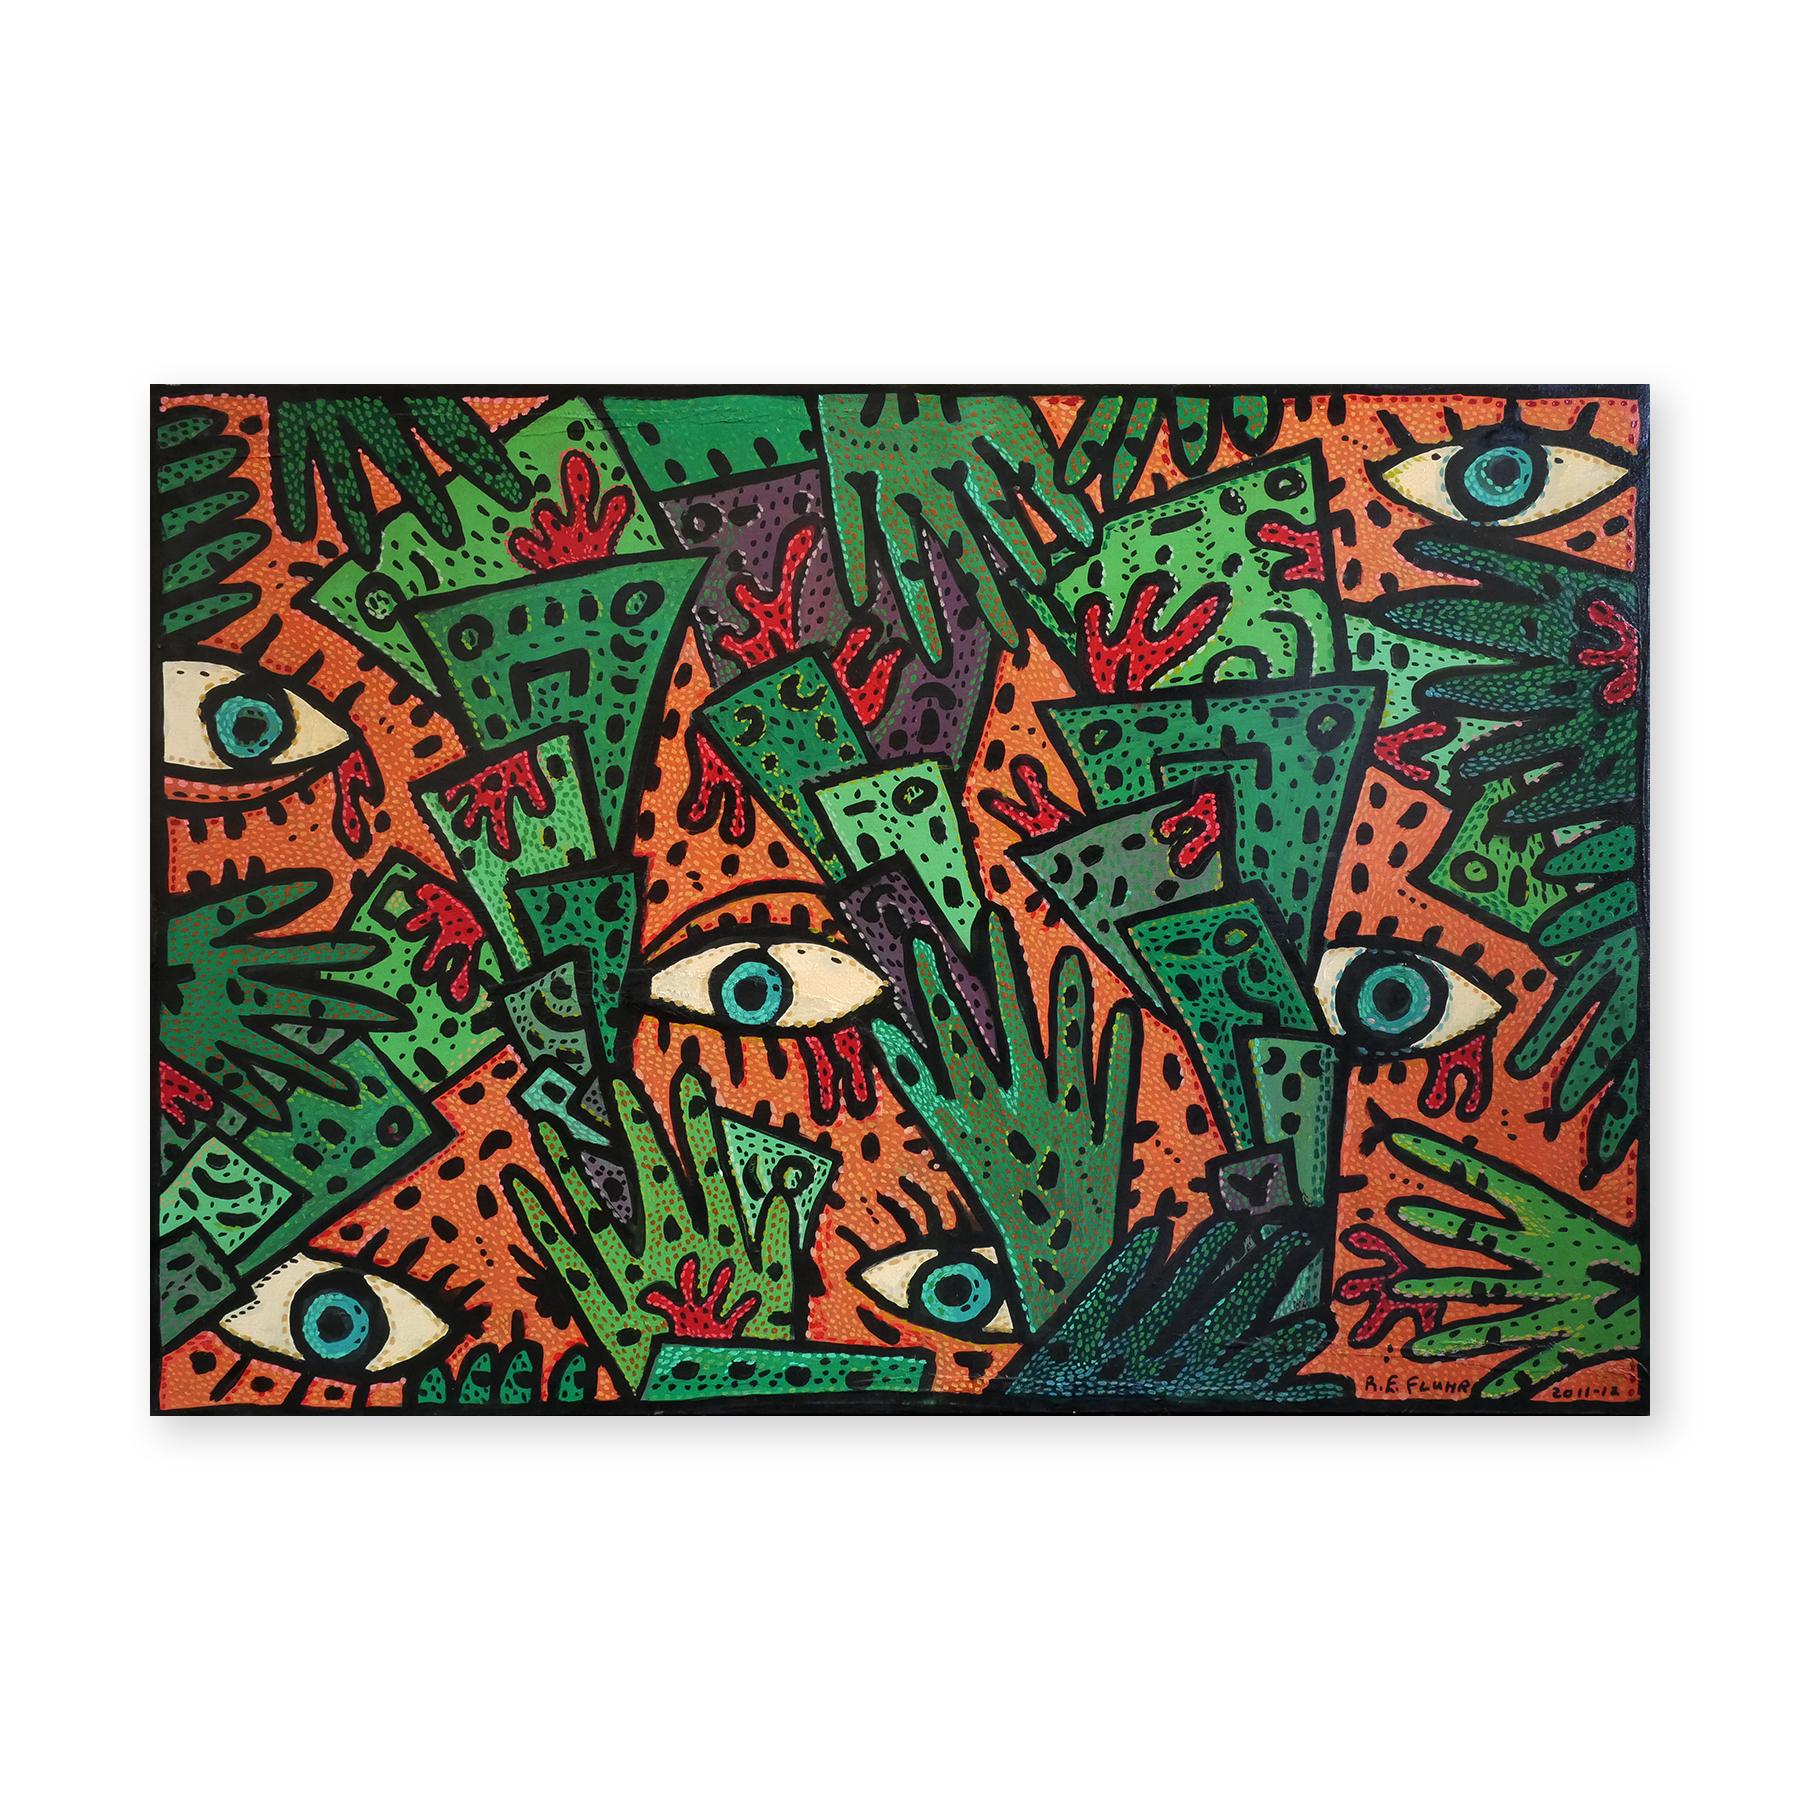 L'argent du sang ? Peinture contemporaine abstraite orange, verte et marron - Painting de Richard Fluhr